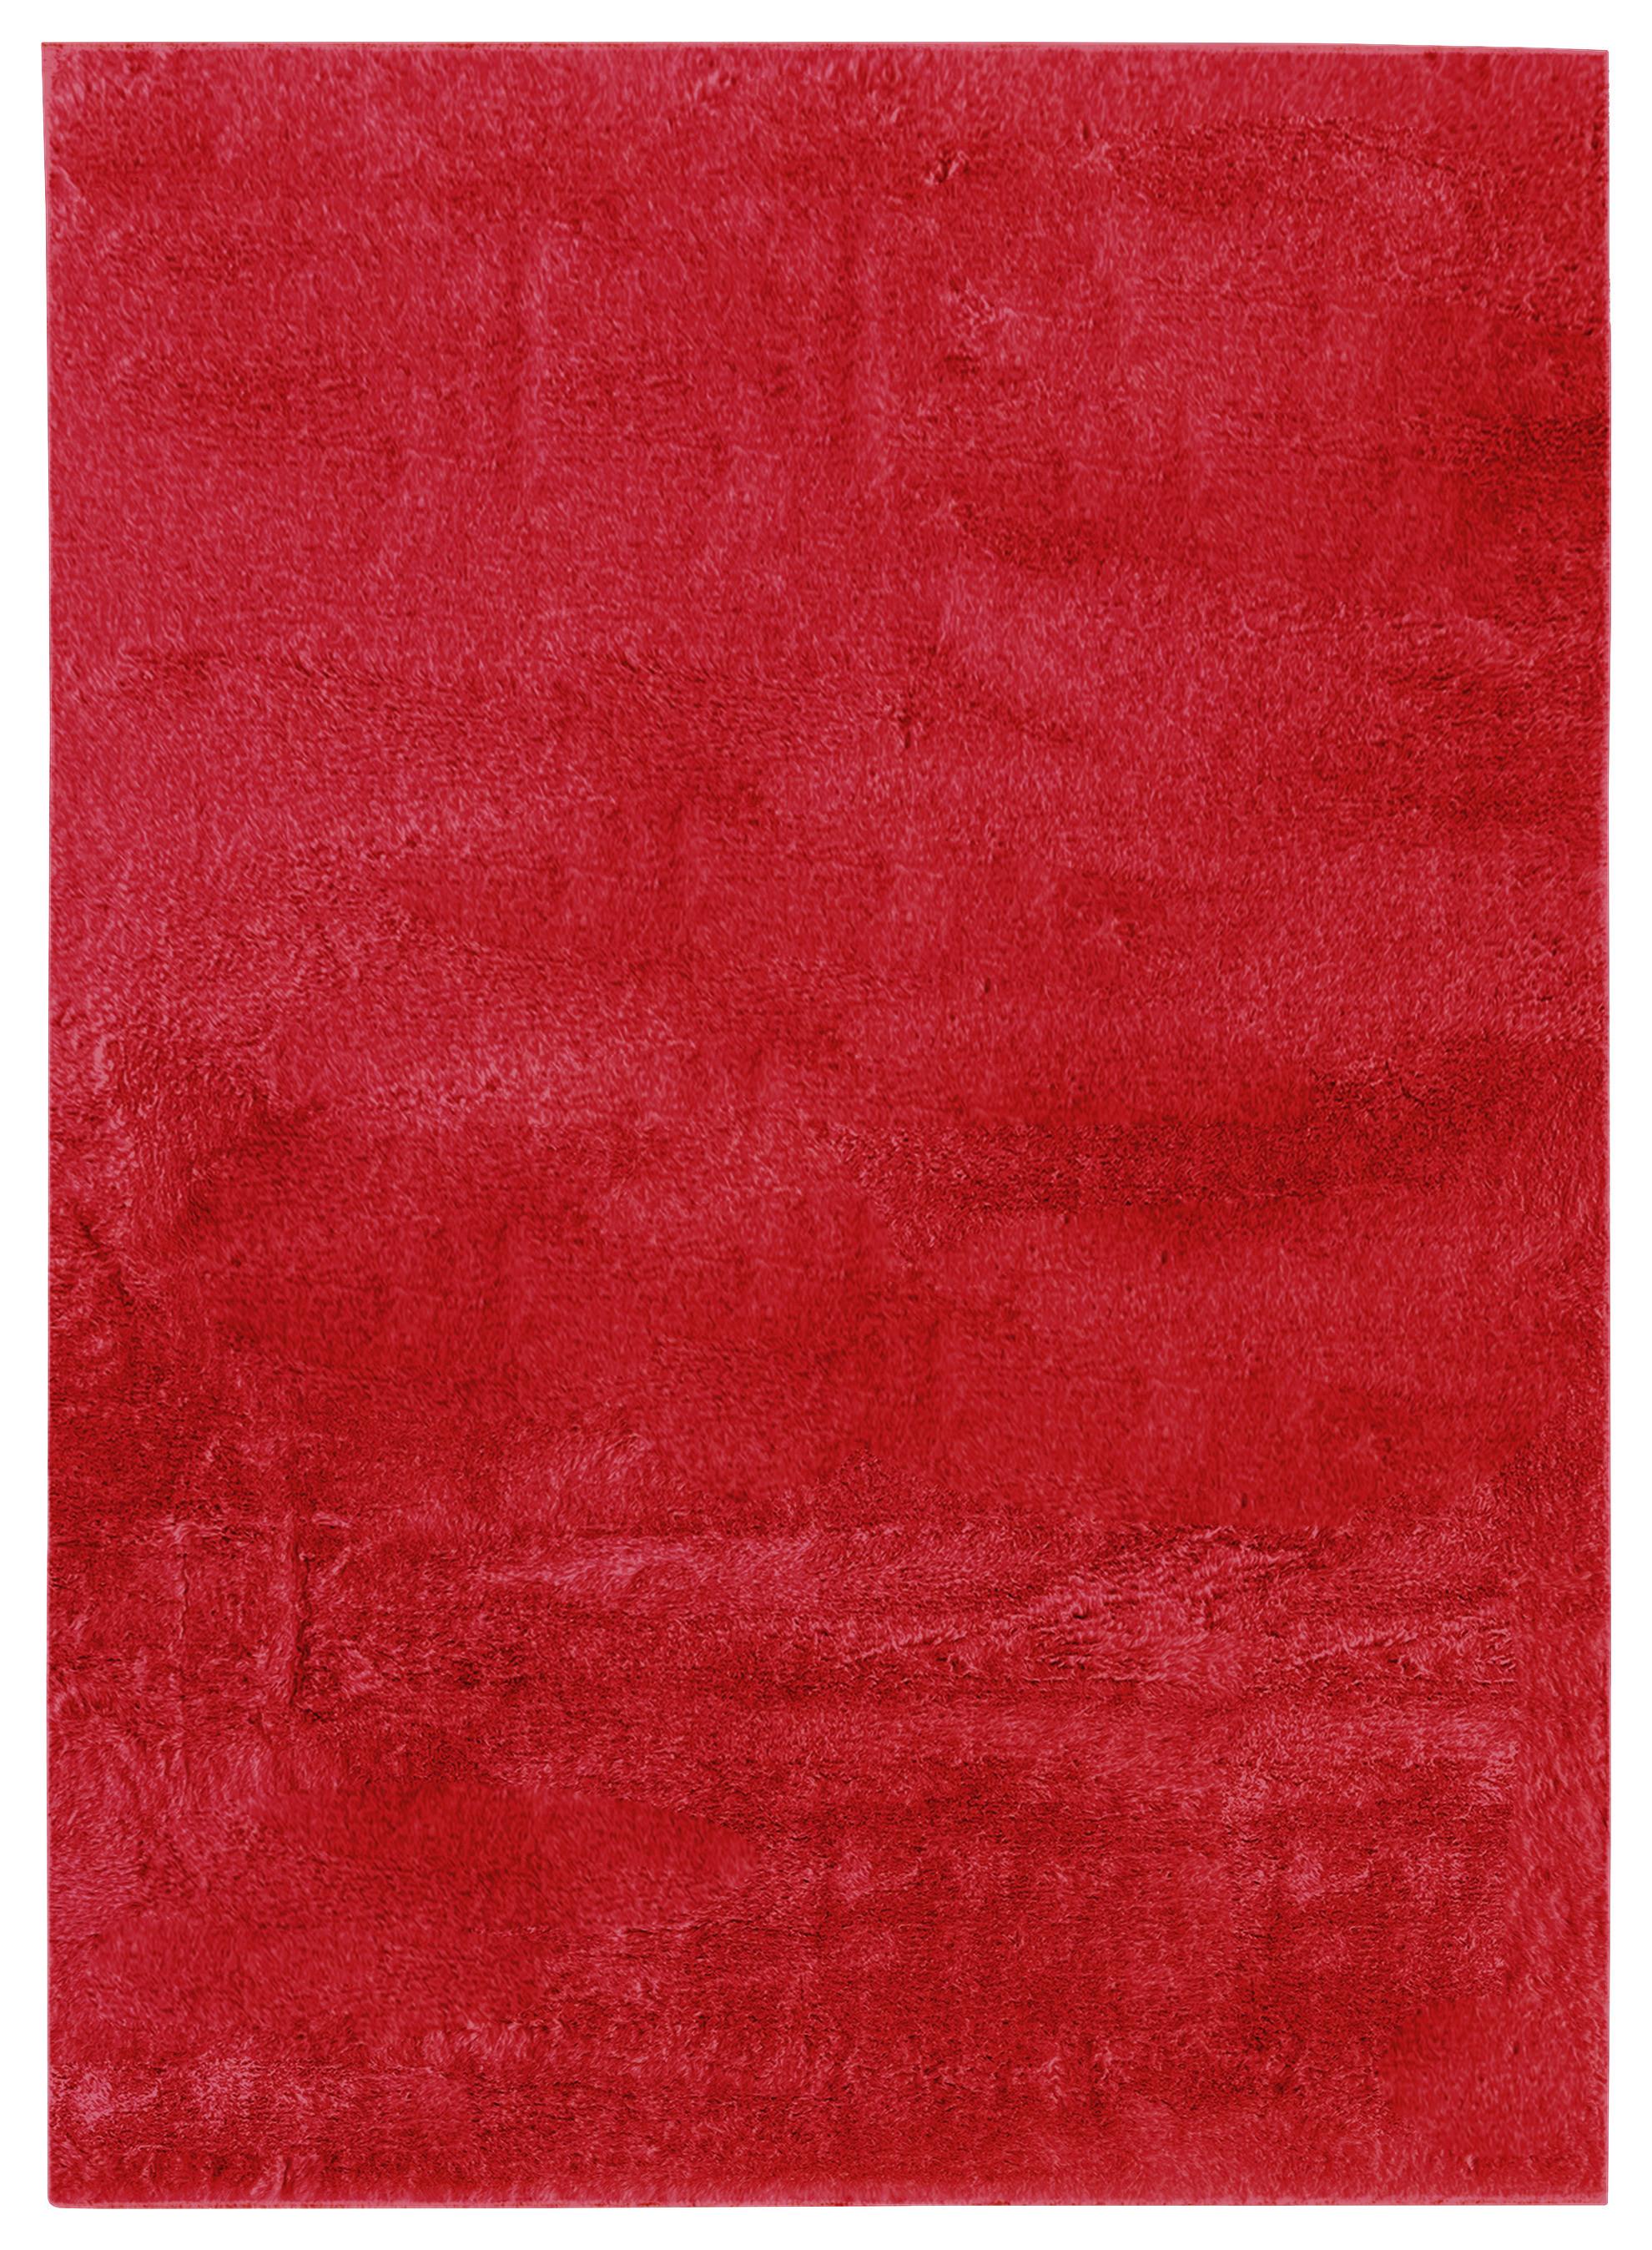 Umělá Kožešina Caroline 3, 160/220cm, Červená - červená, Konvenční, textil (160/220cm) - Modern Living